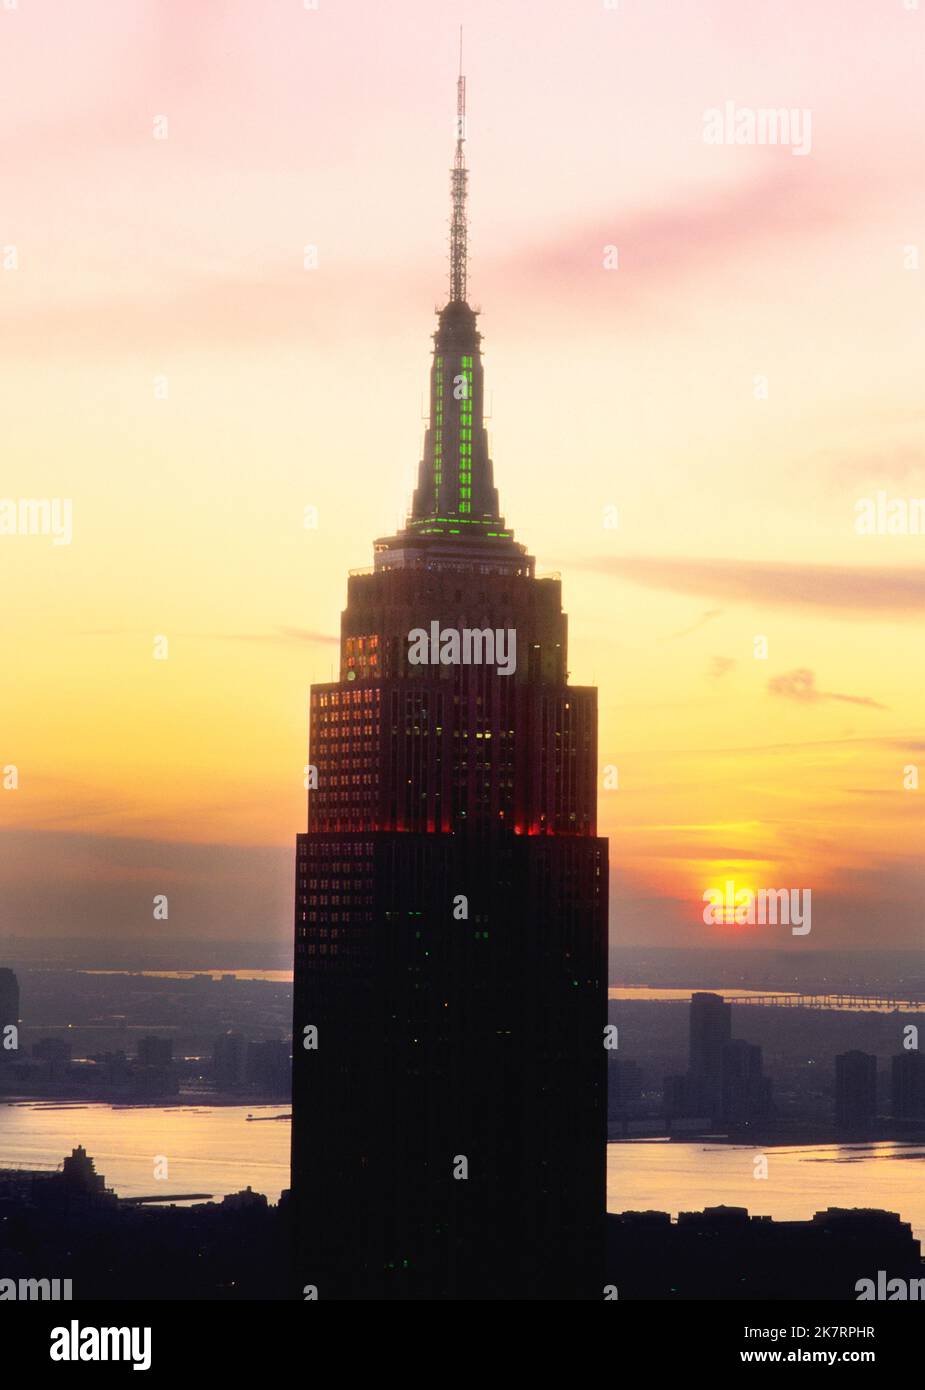 Empire State Building New York au coucher du soleil. Gratte-ciel Midtown Manhattan et Hudson River. Immobilier commercial. Vue en hauteur de la tour. ÉTATS-UNIS Banque D'Images